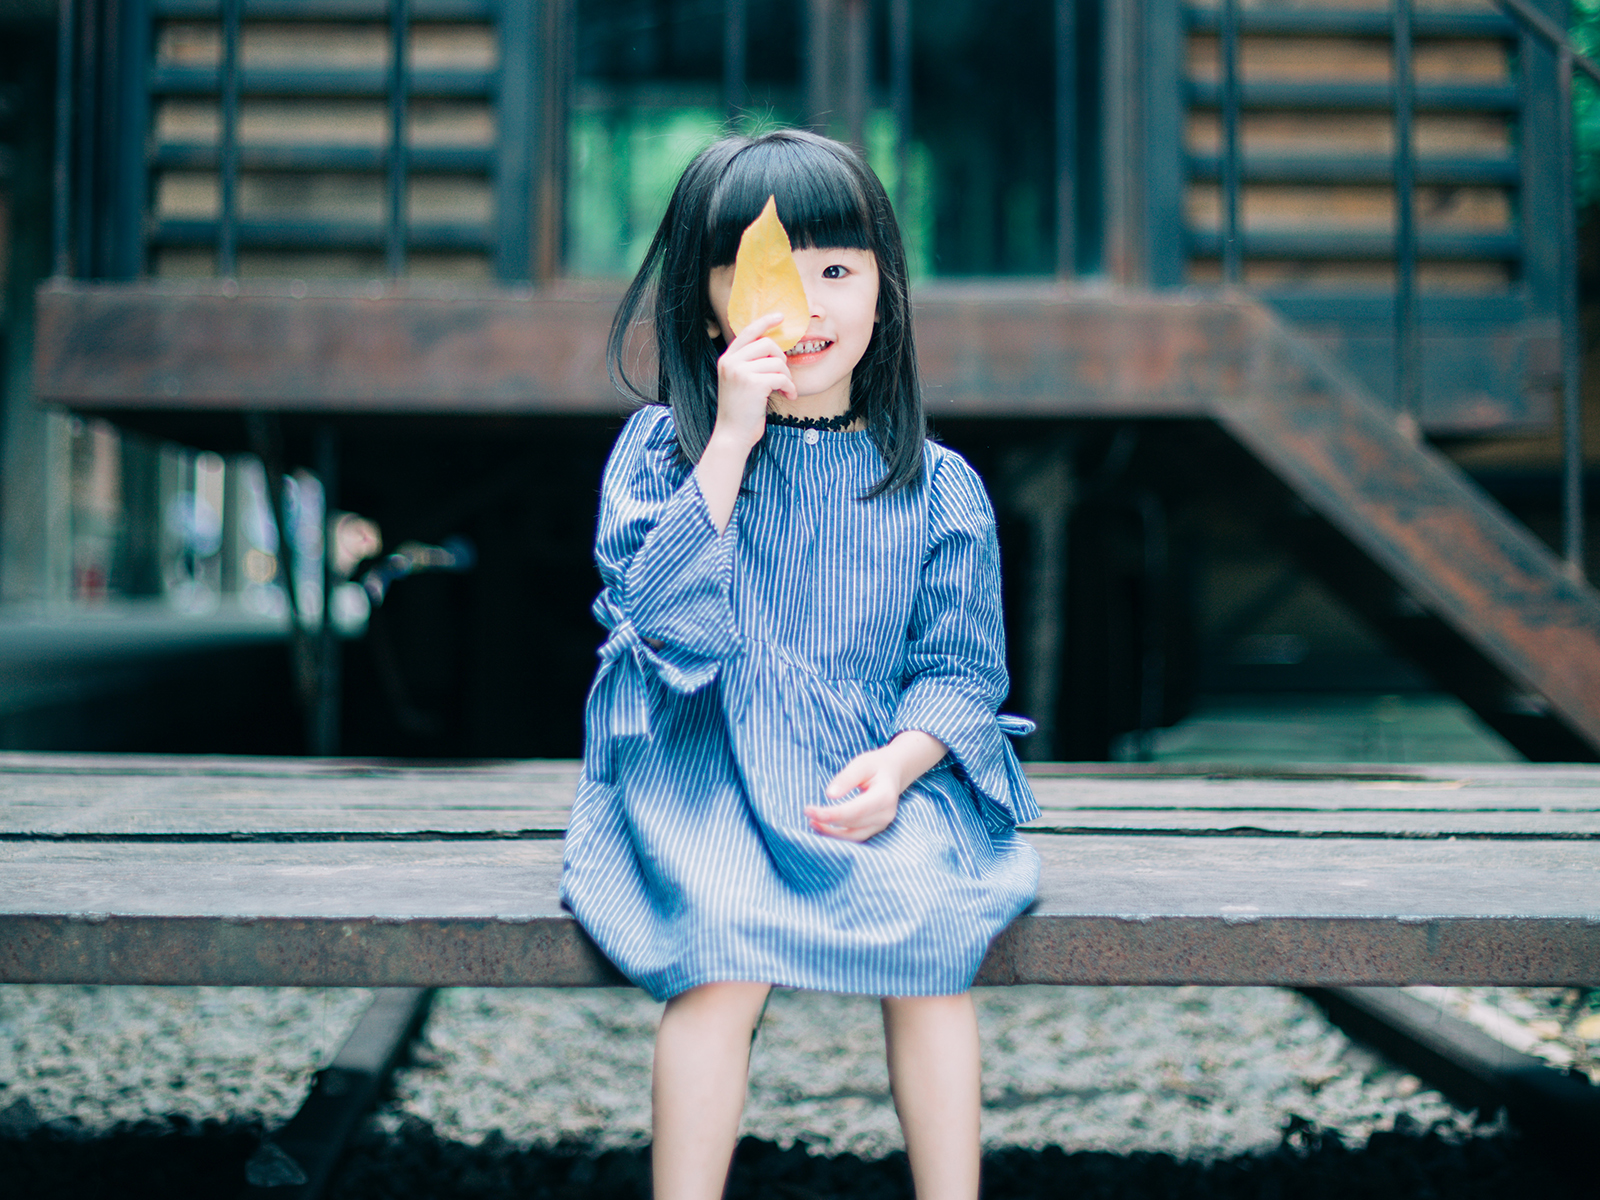 【全广州】自选场景户外儿童摄影 不限服装造型